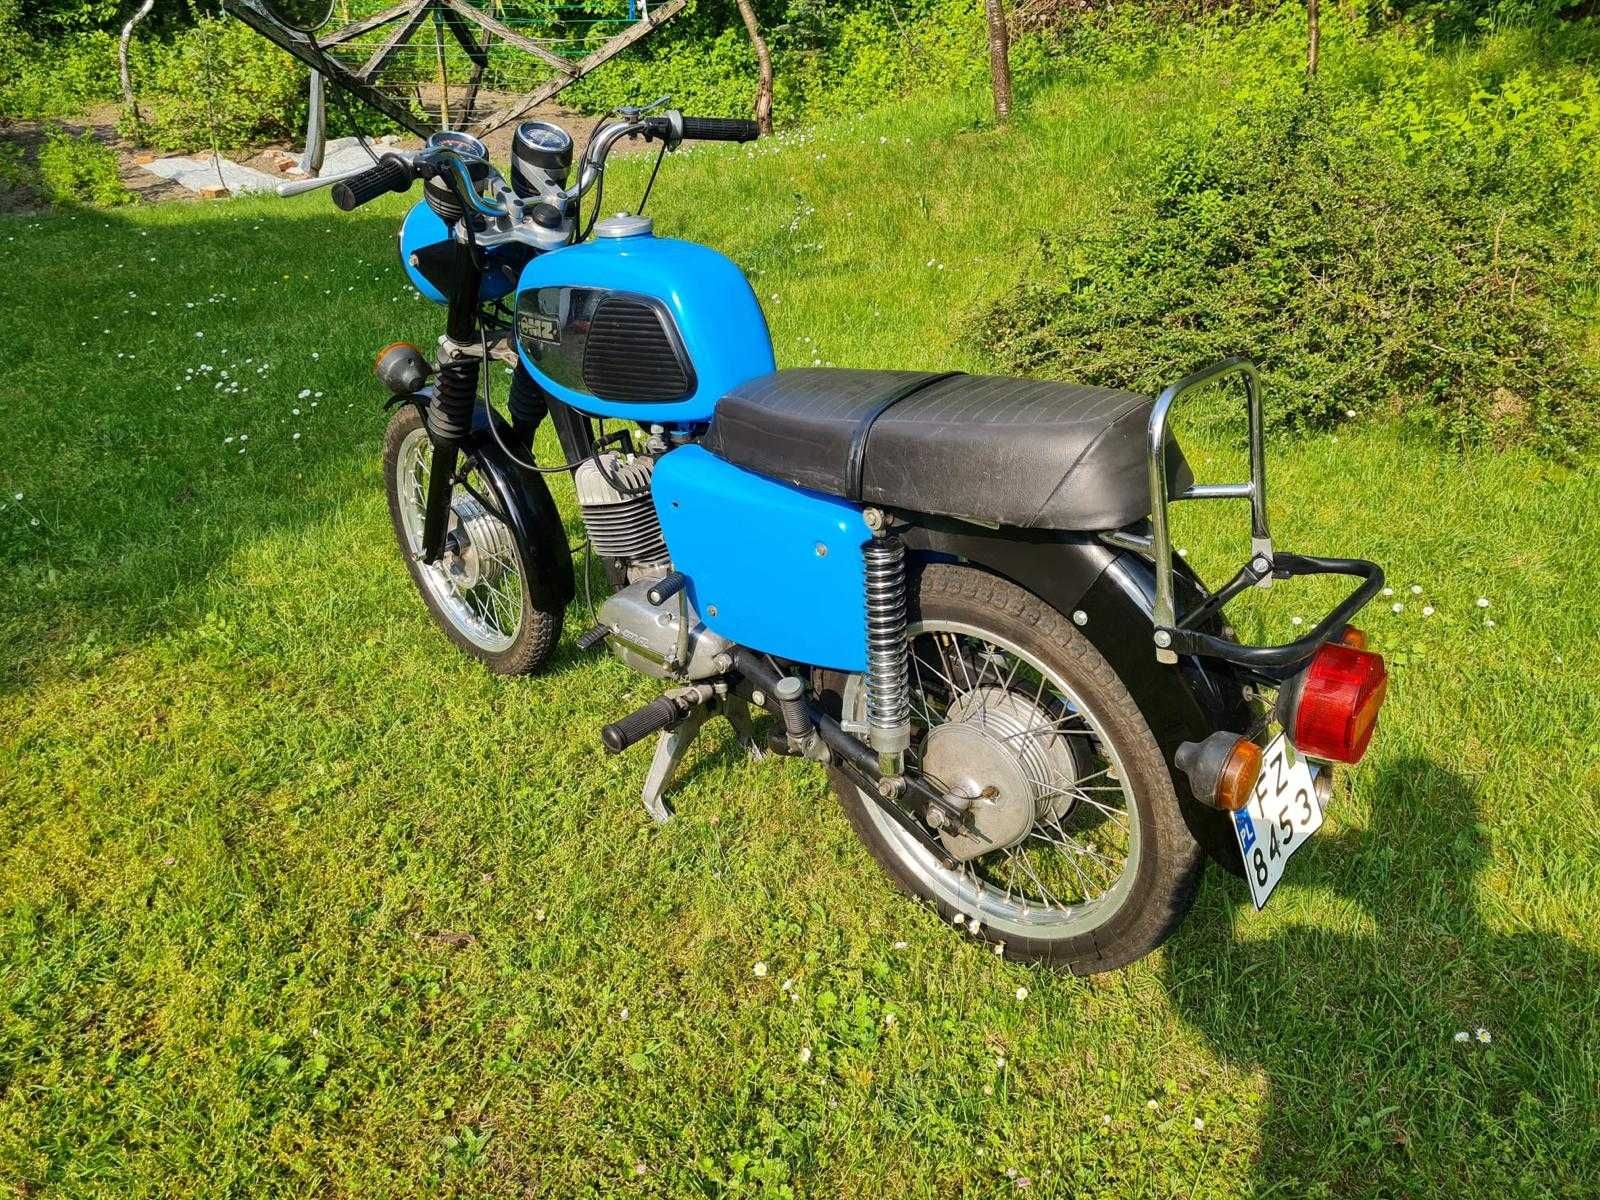 Motocykl MZ  TS 150 Kolekcjonerski z papierami Oryginał